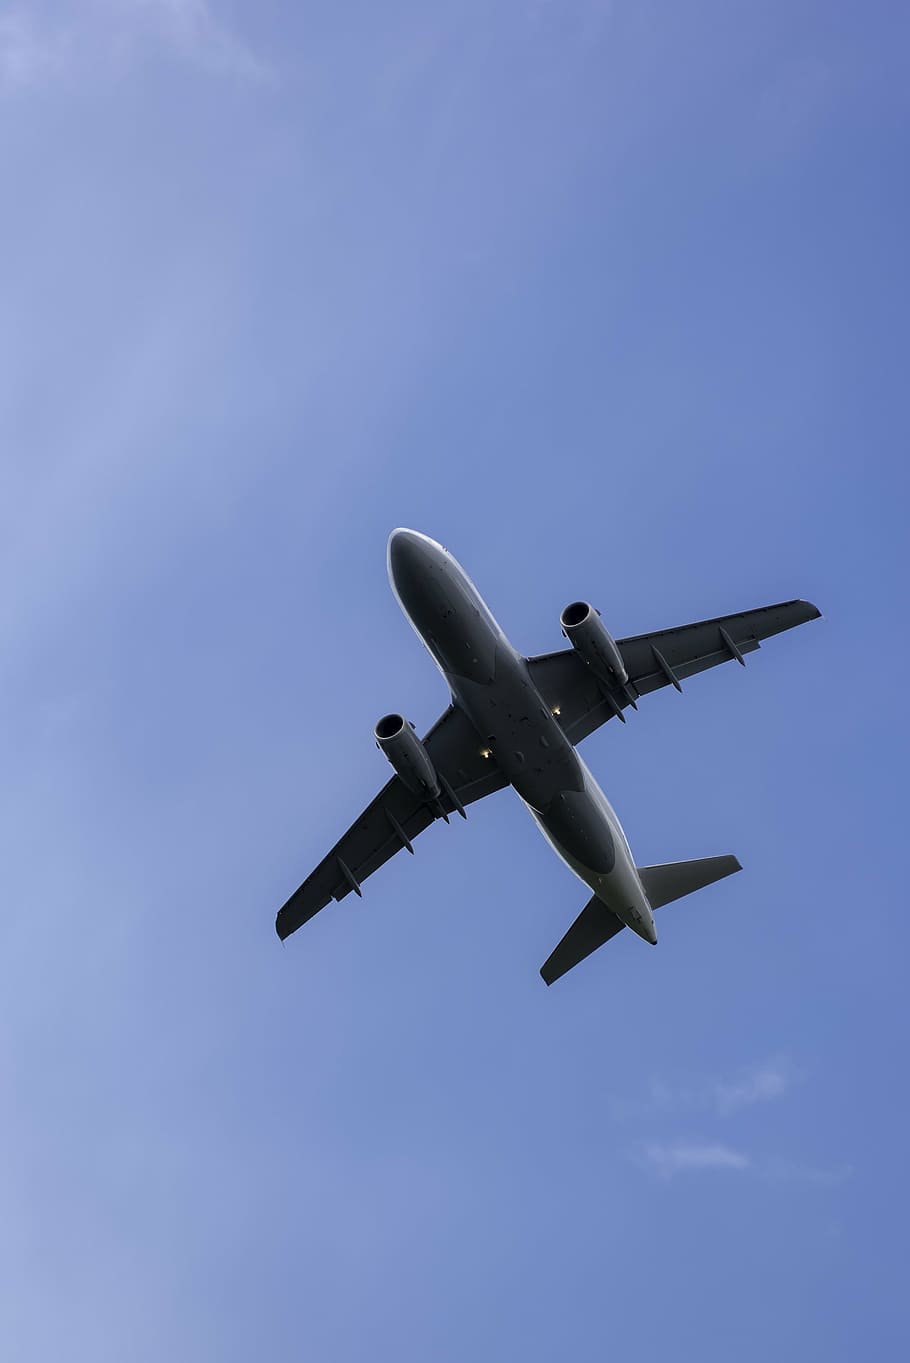 灰色の飛行機の飛行, 飛行機, 航空機, 航空, 飛行, 空, 旅行, 青, 交通, 商用飛行機